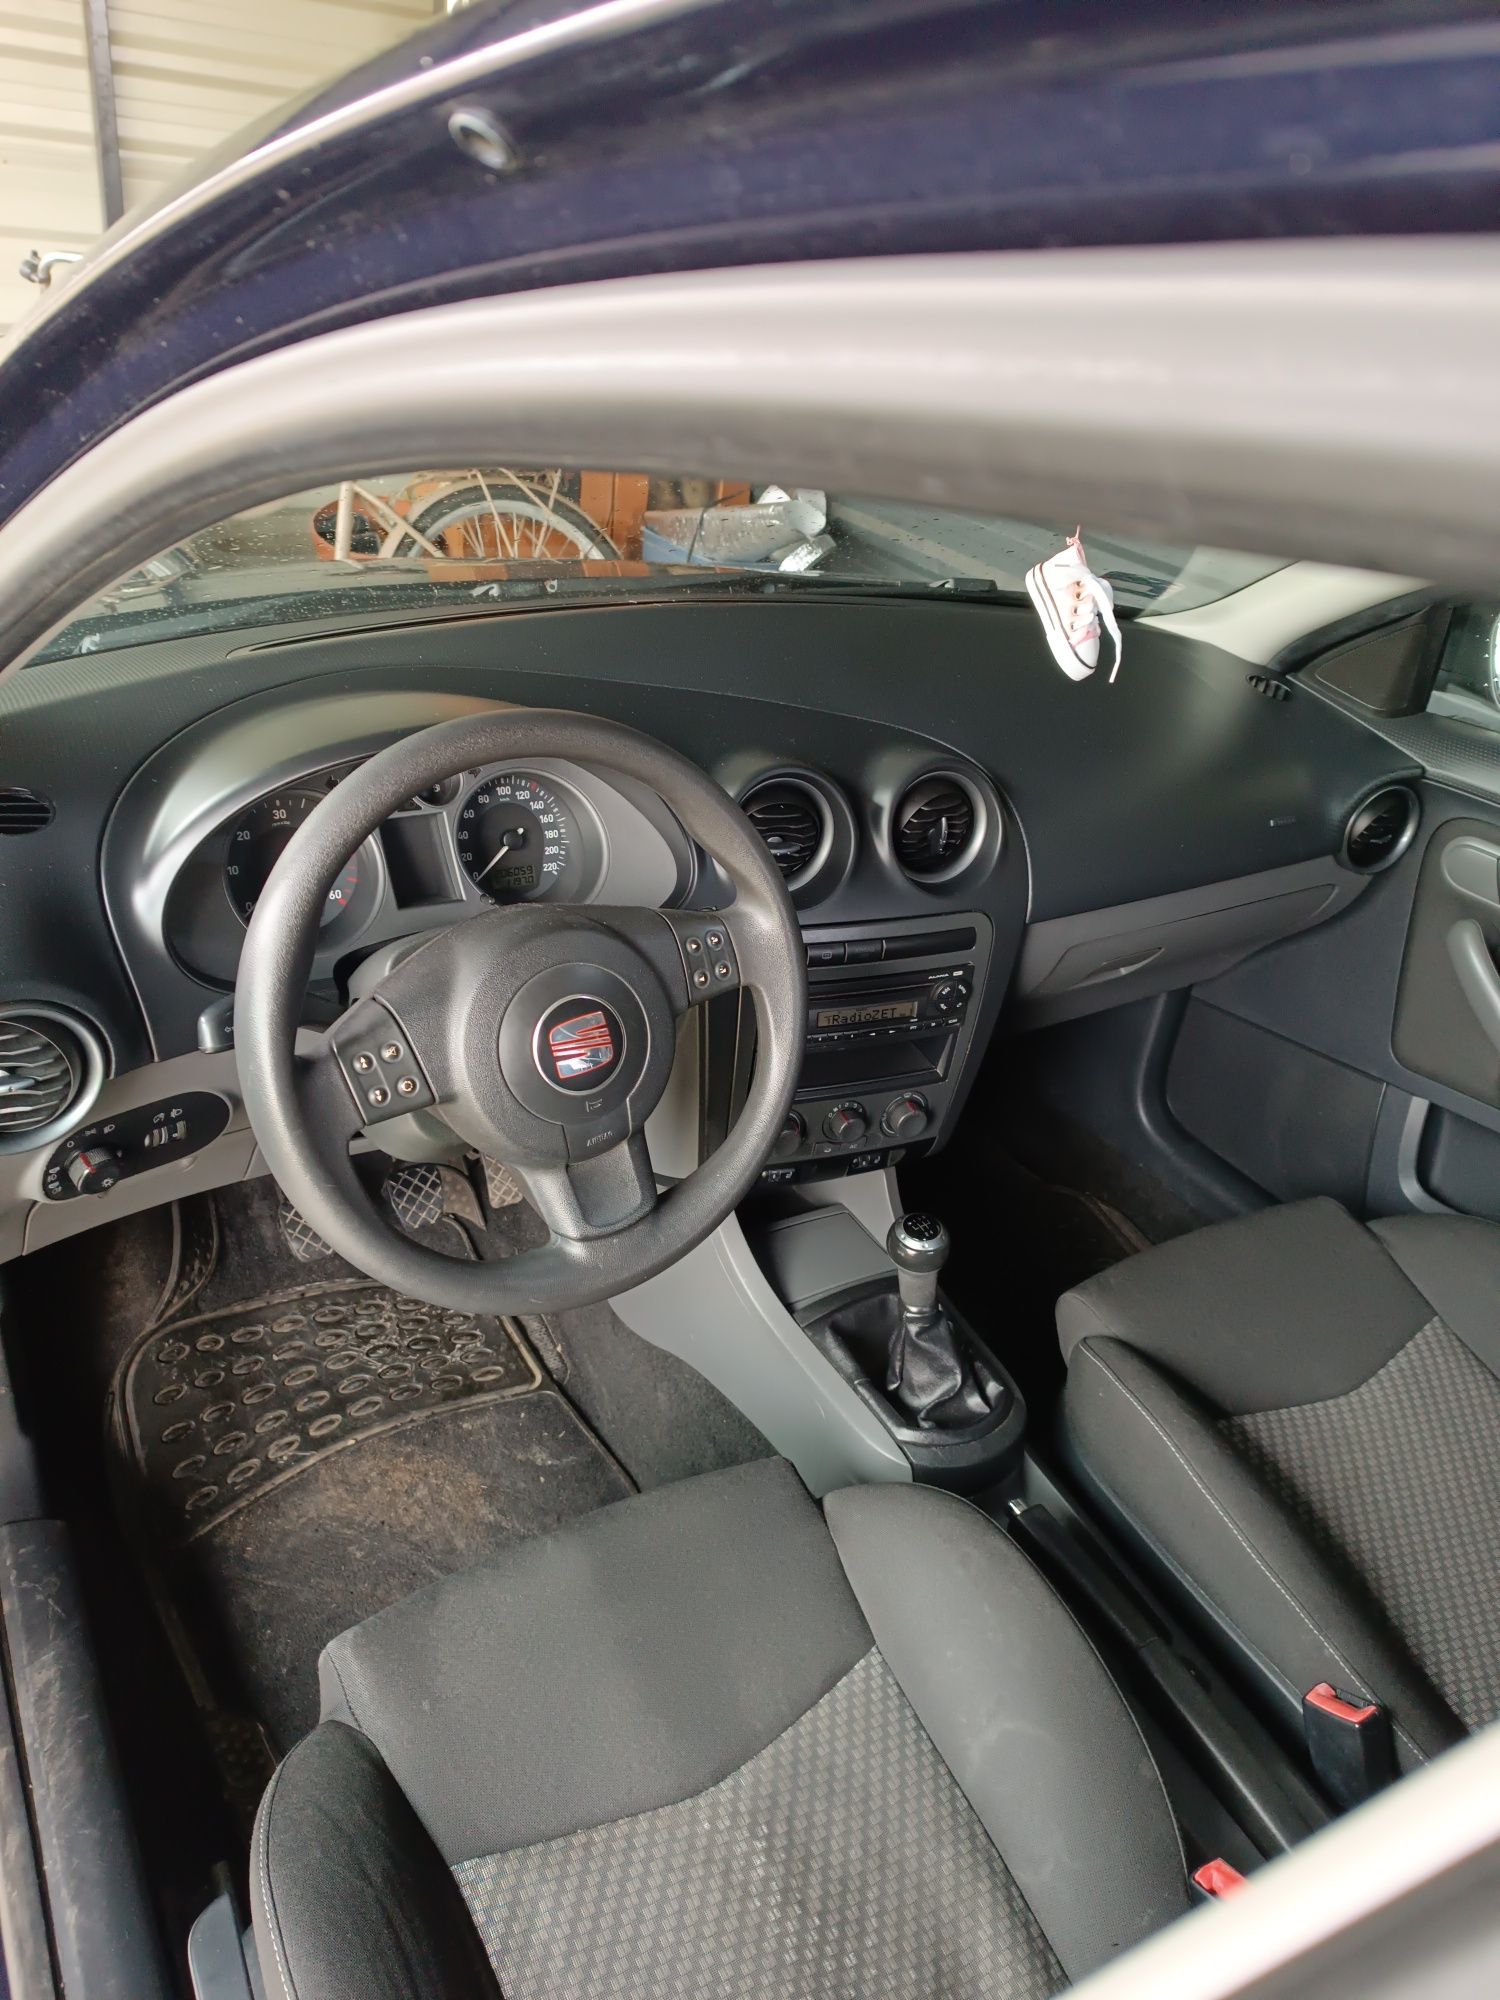 Seat Ibiza 1.4d klima dwa komplety kół